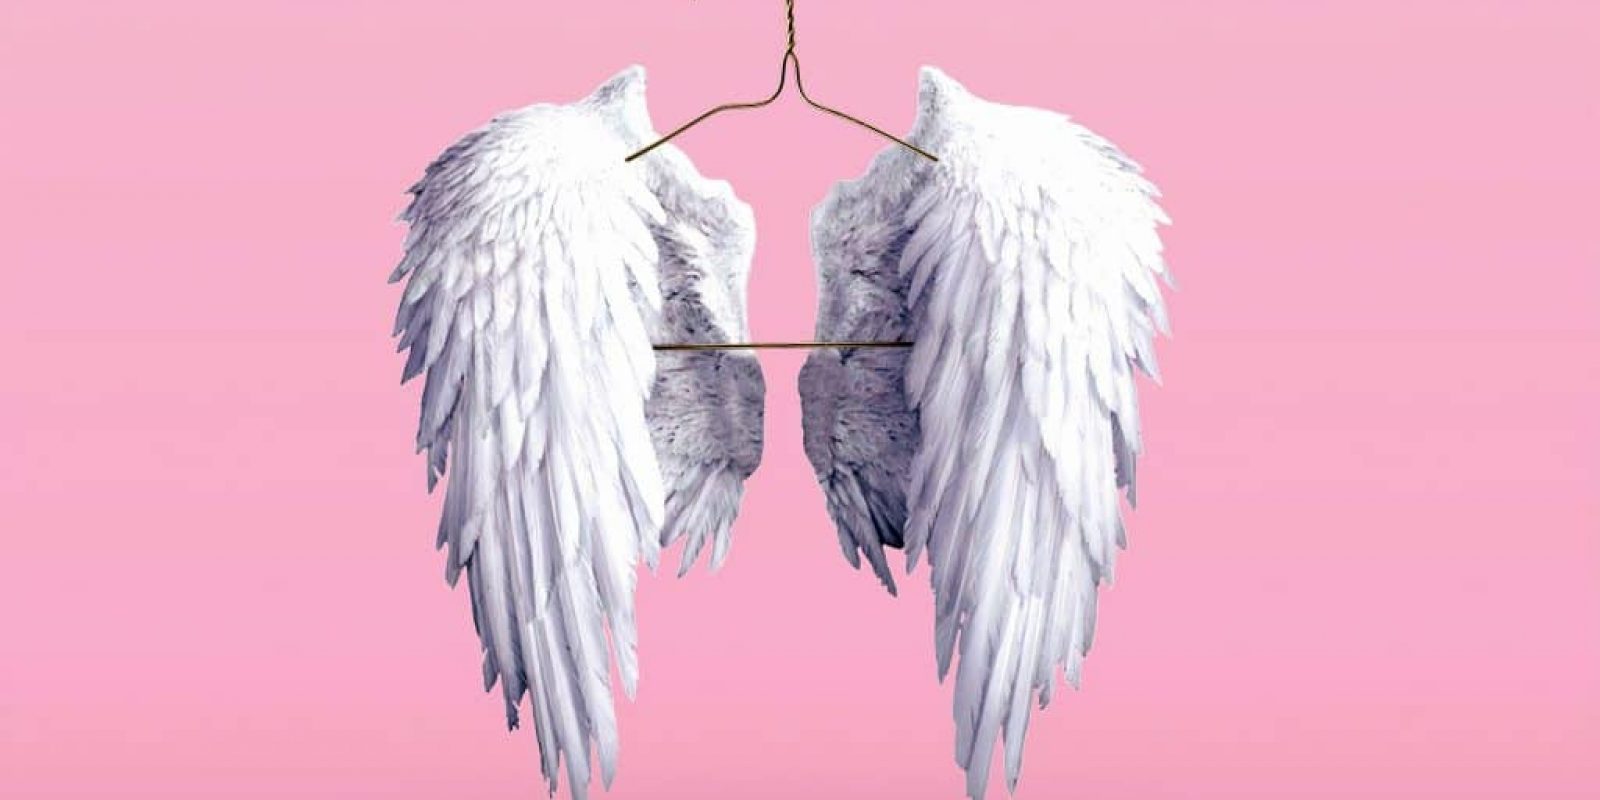 comment faire quand les signes des anges sont incompréhensibles ?